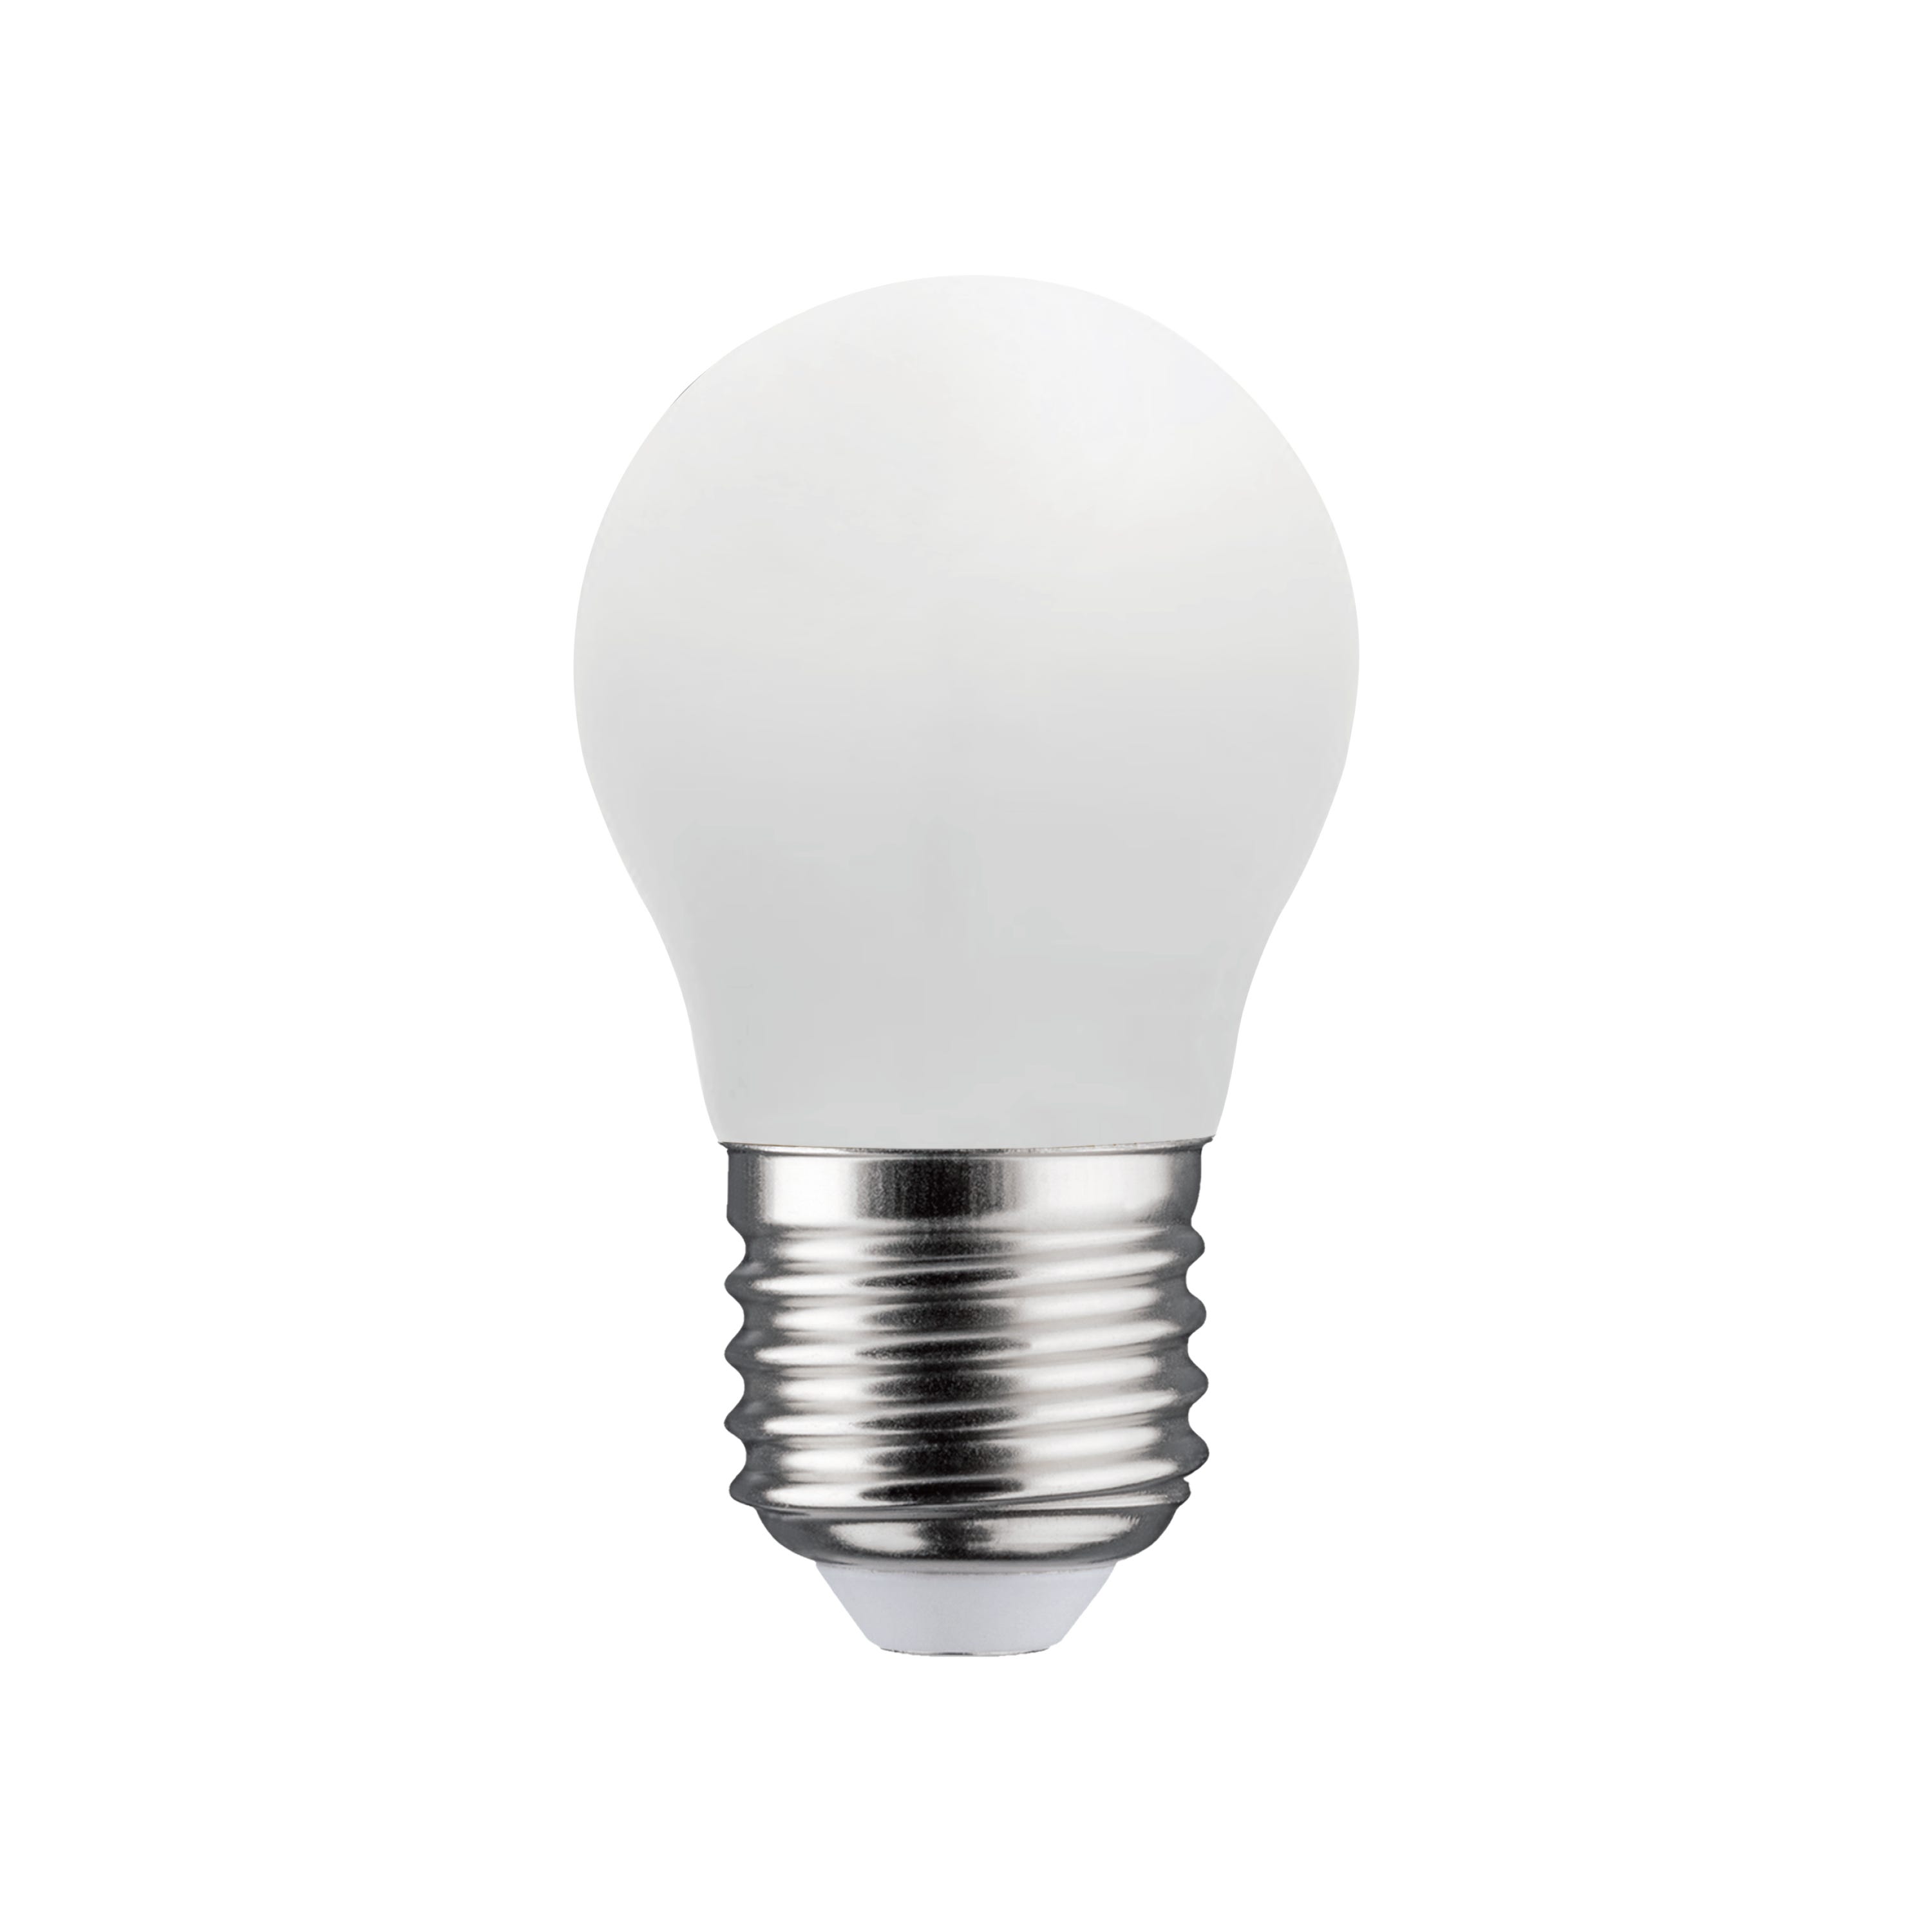 Set da 2 lampadine LED, faretto, smerigliato, luce naturale, 4.2W=470LM  (equiv 40 W), 120° , LEXMAN